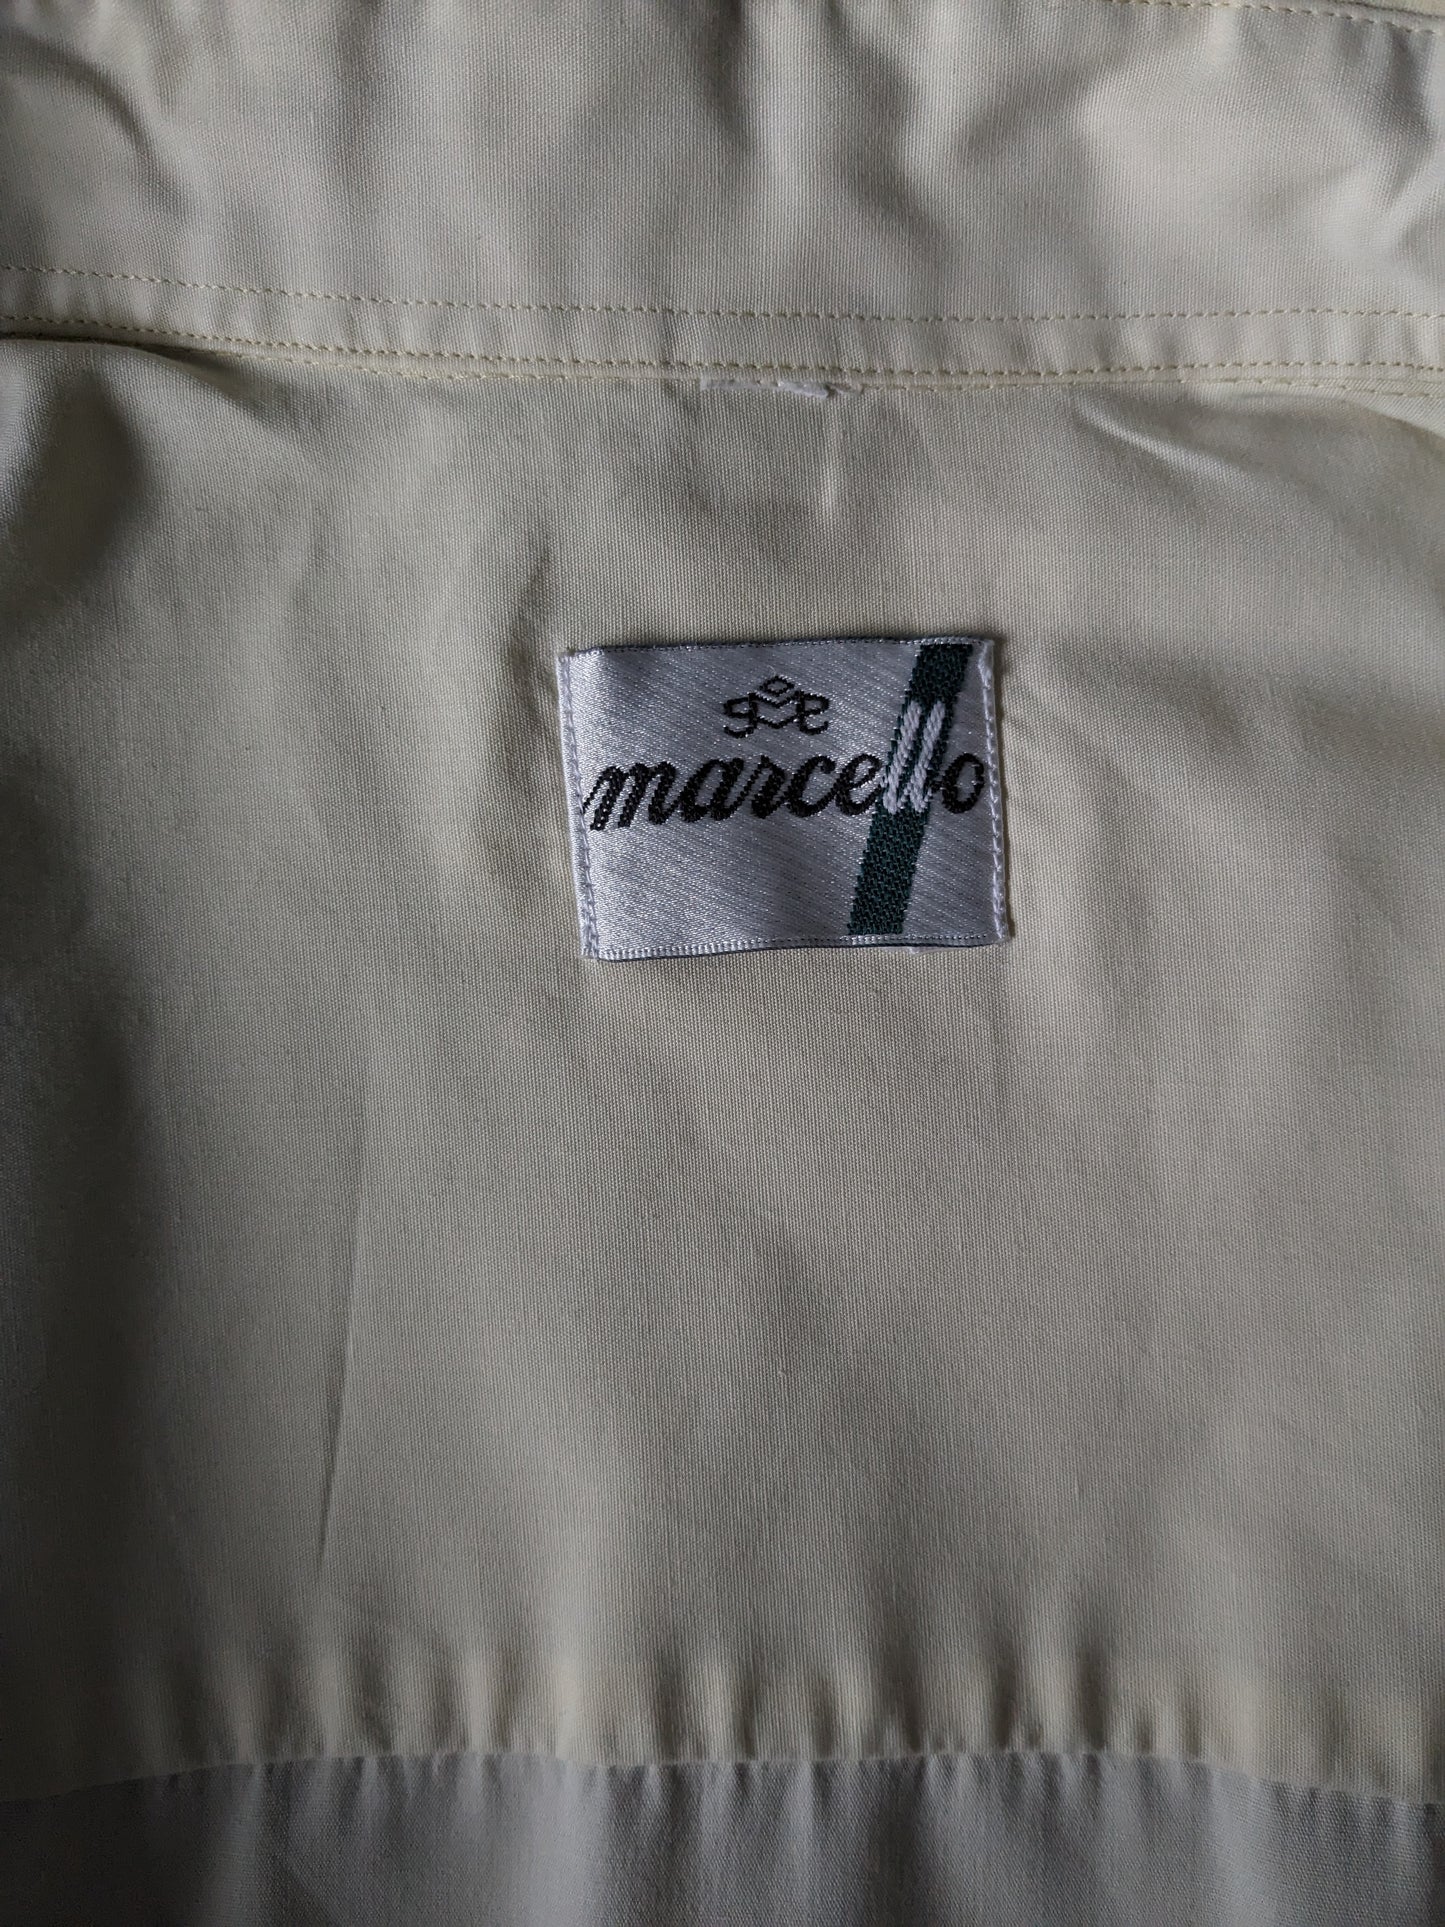 Shirt Marcello des années 70 avec col Point. Couleur jaune clair. Taille xl.